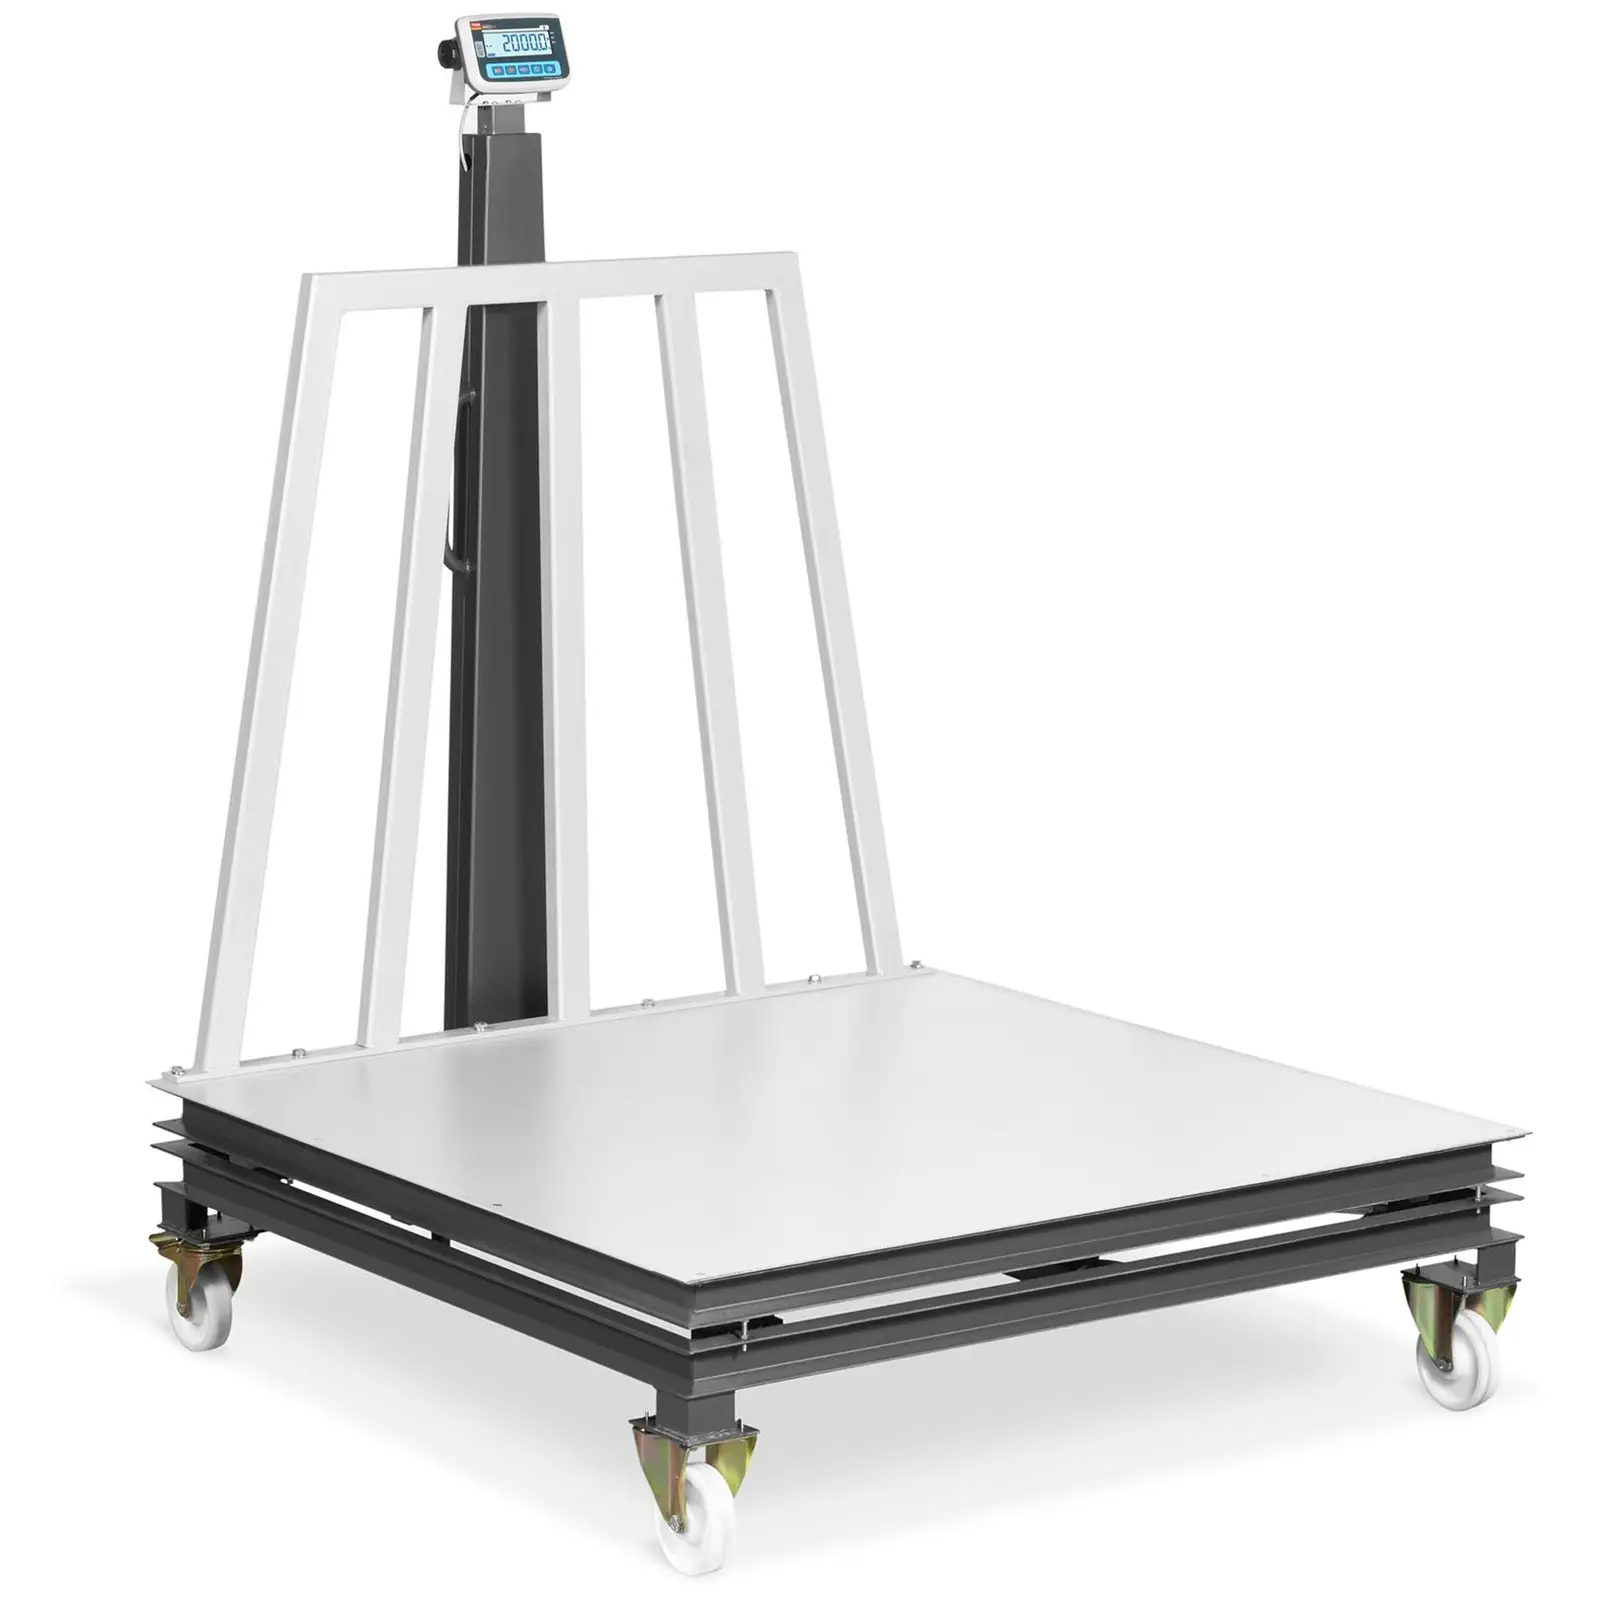 Balance plateforme - Calibrage certifié - 500 g (0 - 1 500 kg) / 1 kg (1 500 - 2 000 kg) - 1500 x 1500 mm - Sur Roues